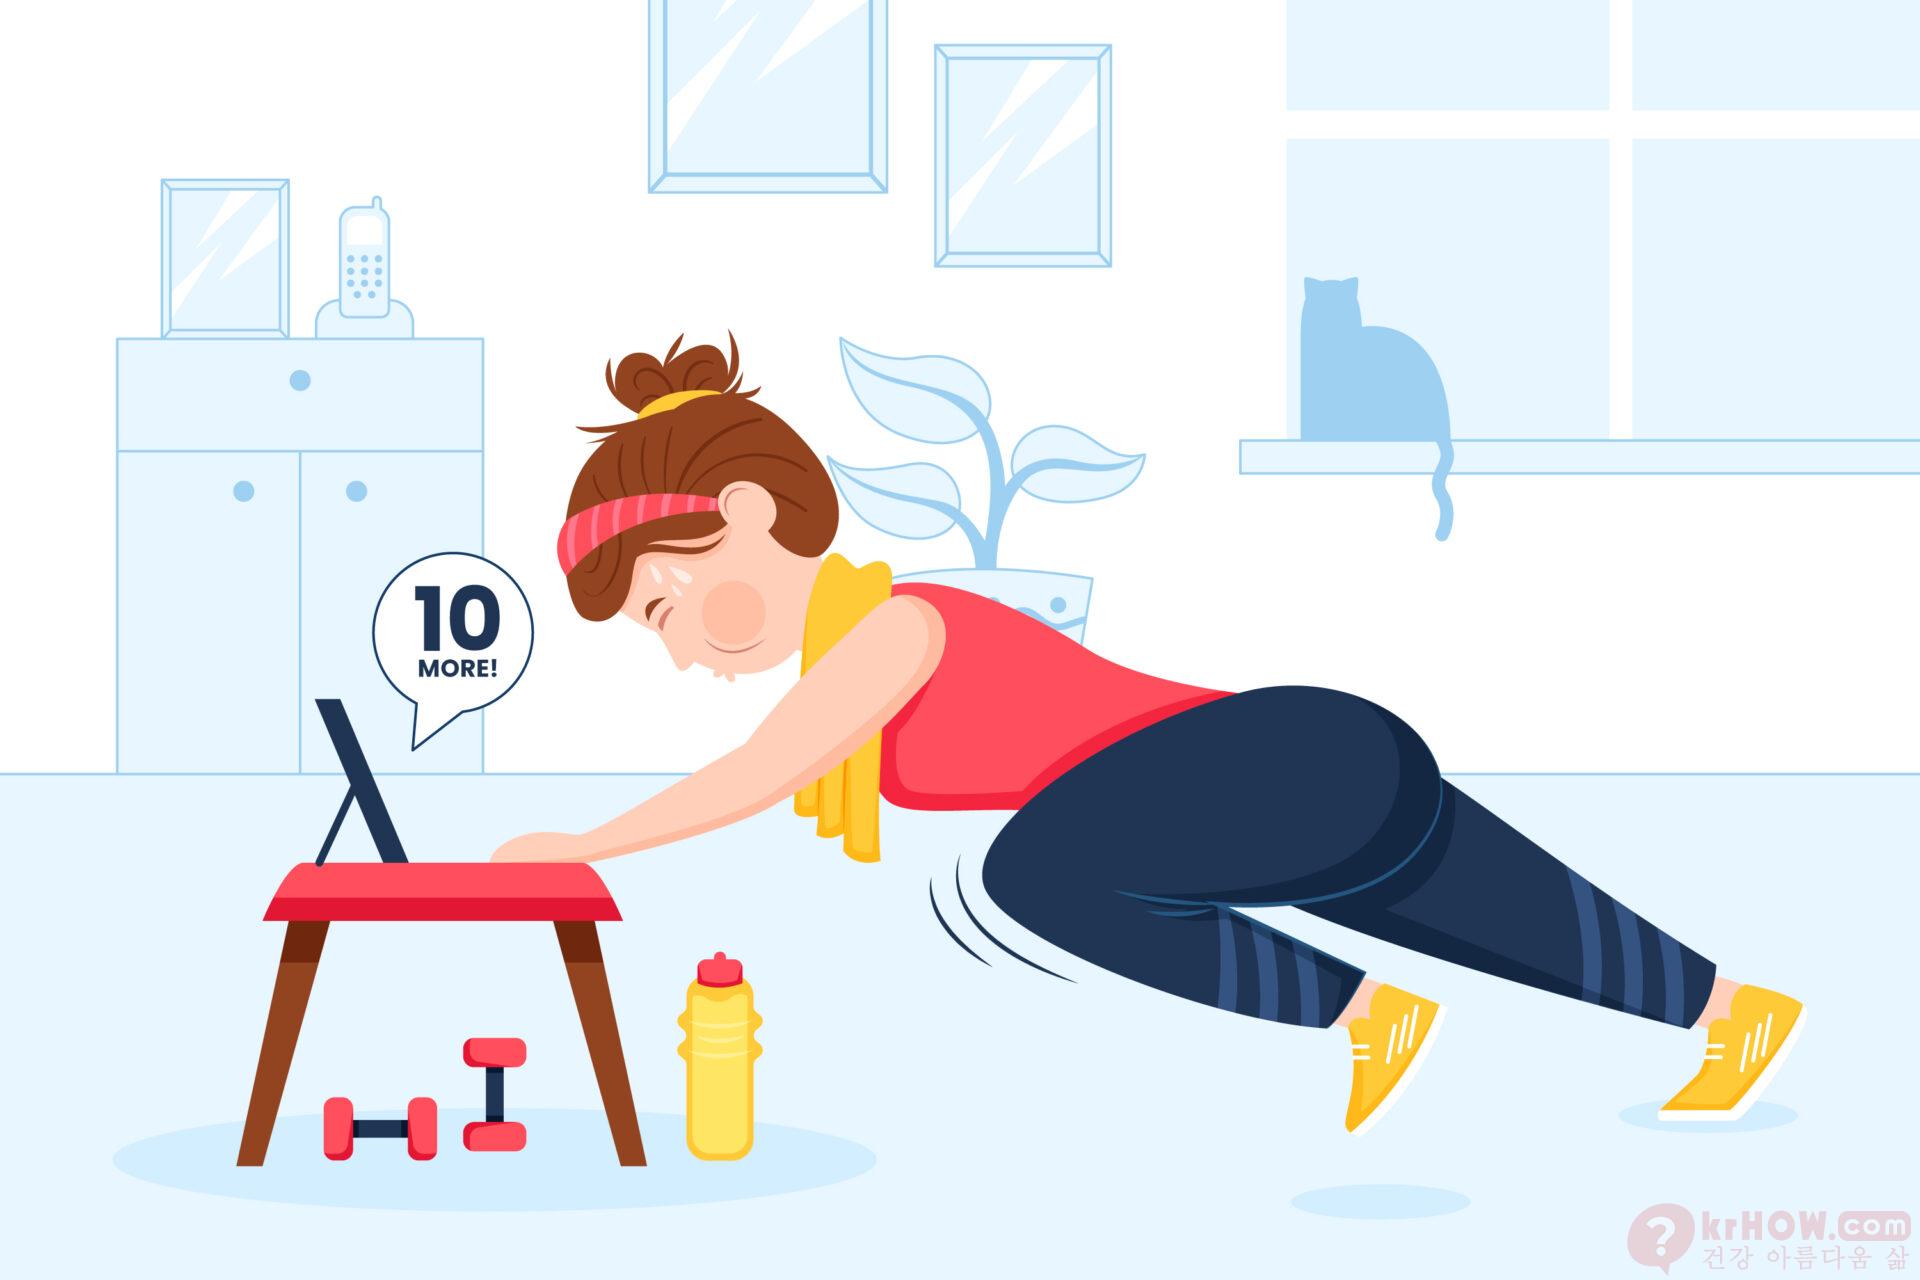 운동 후에 낮잠을 자는 것이 체중 감량에 직접적인 영향을 미치는지에 대한 증거는 없습니다.